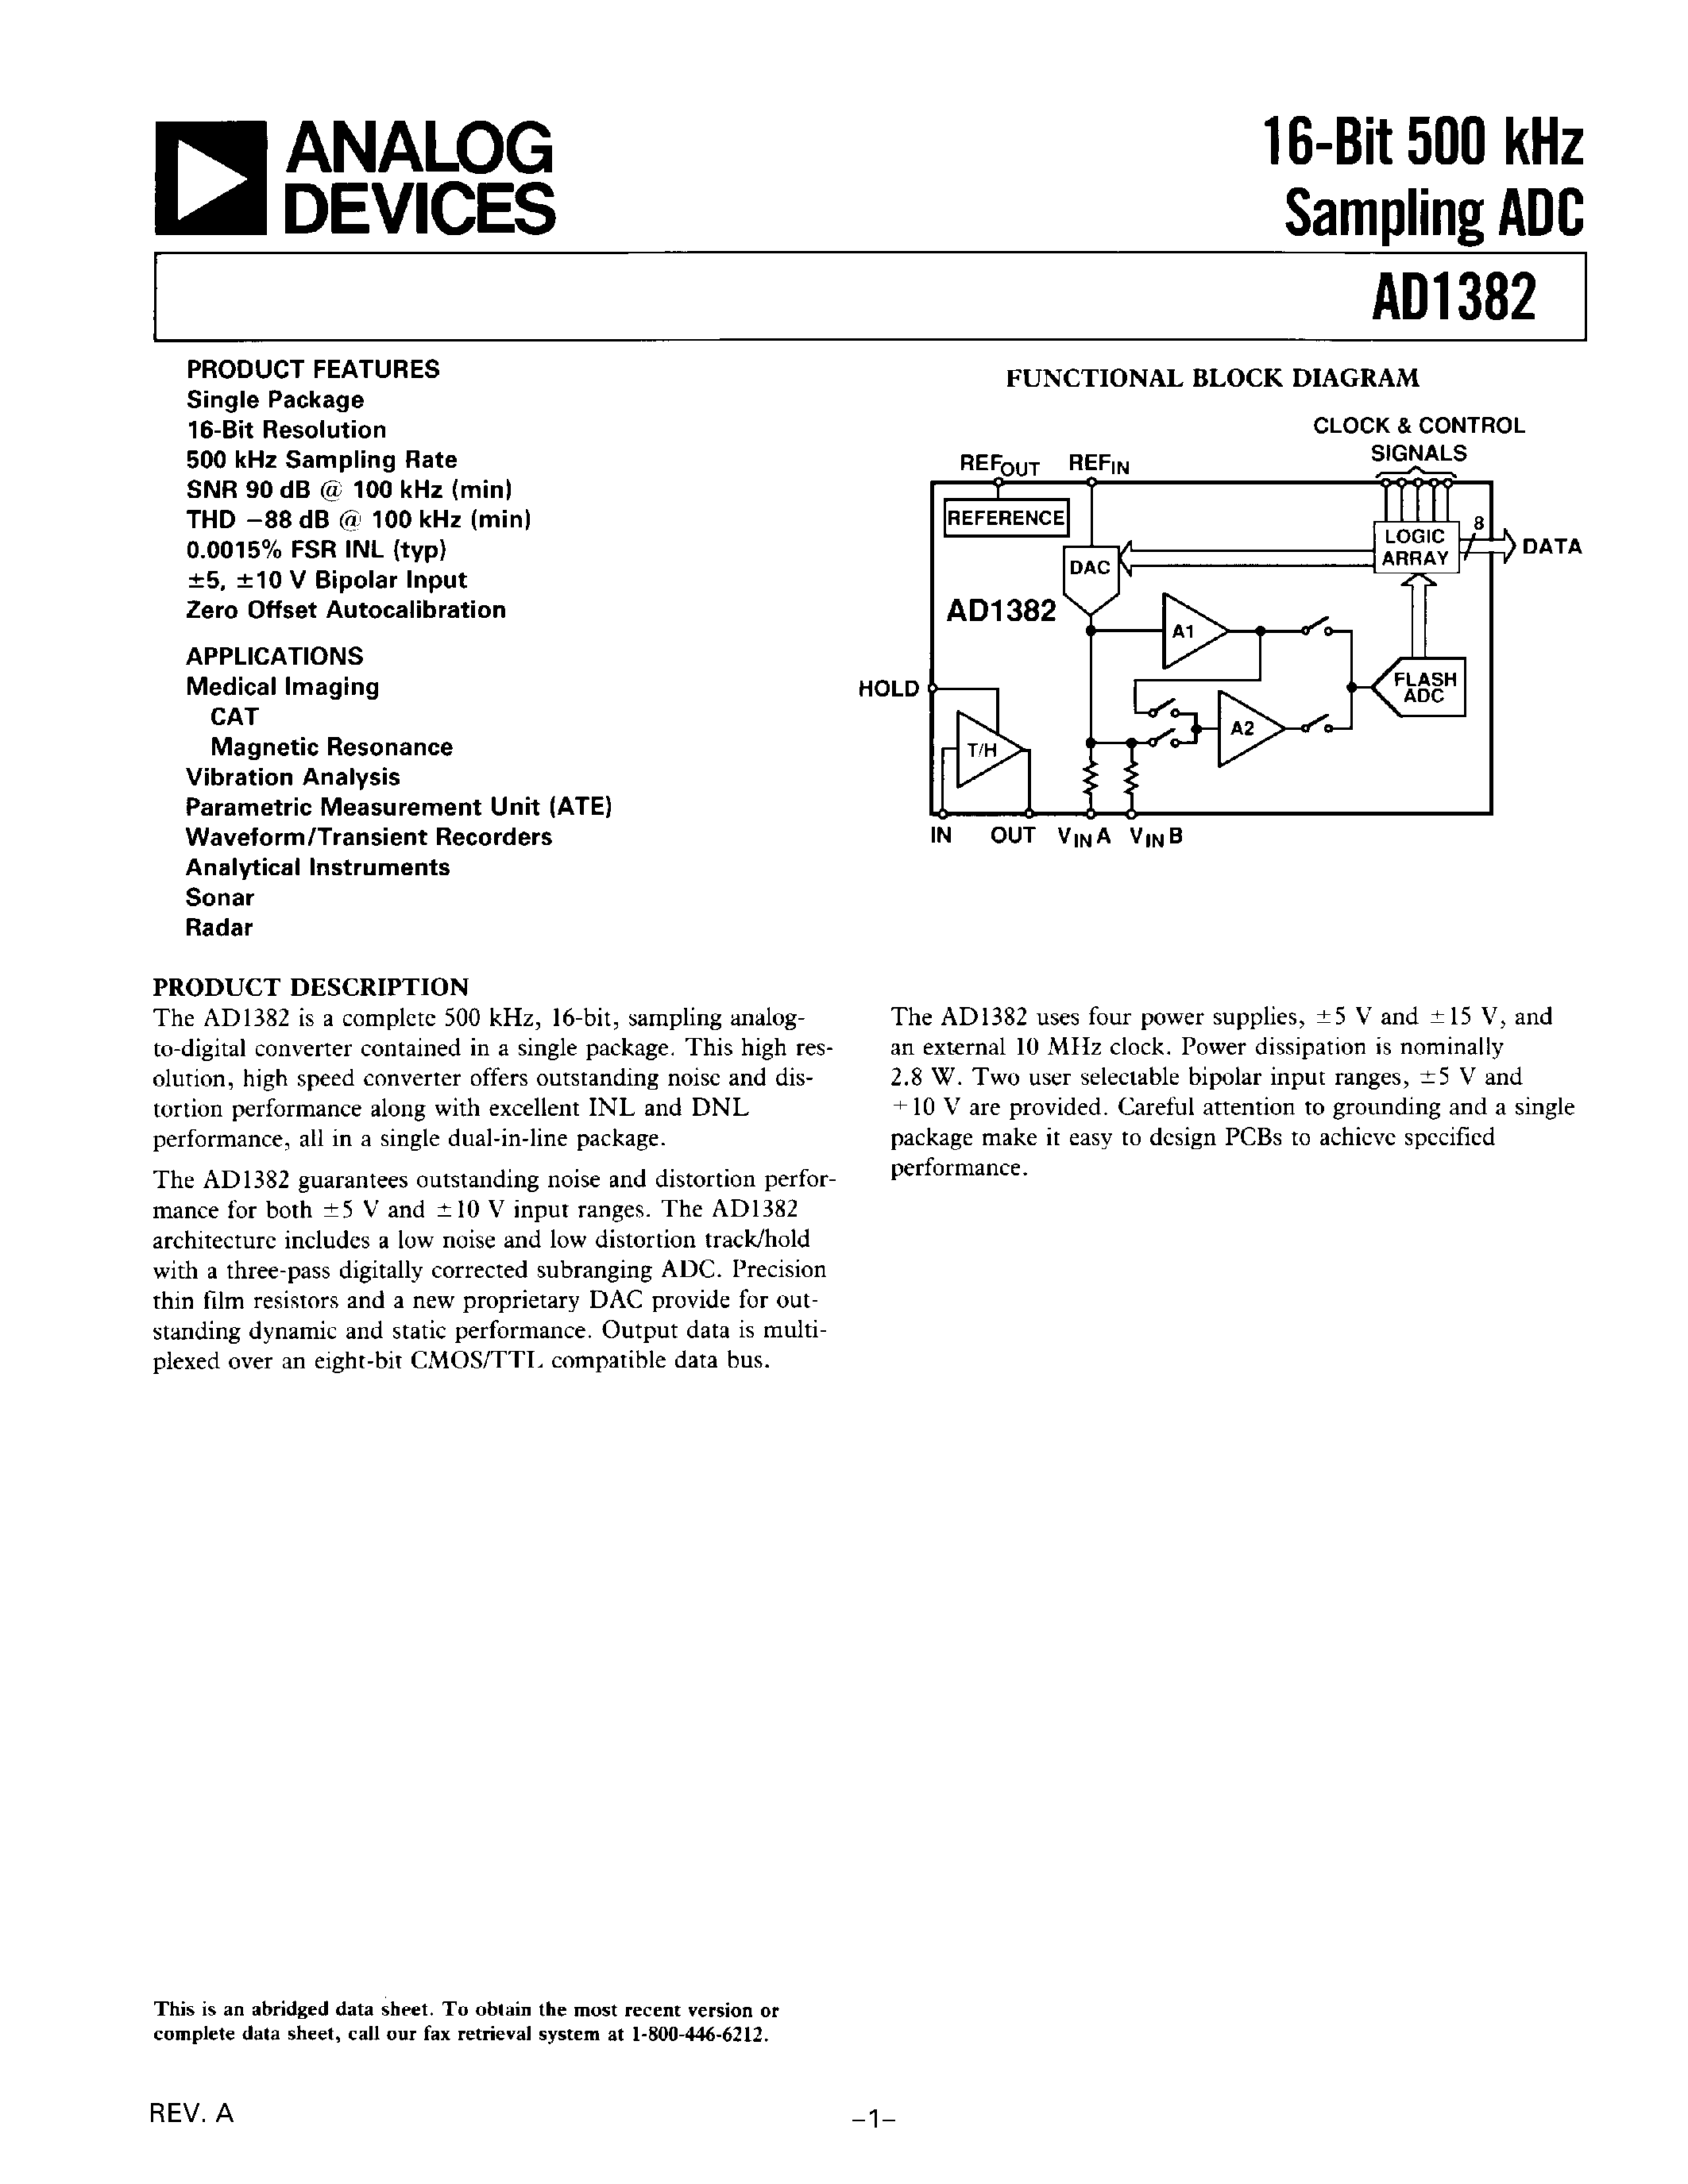 Datasheet AD1382 - 16-Bit 500 kHz Sampling ADC page 1